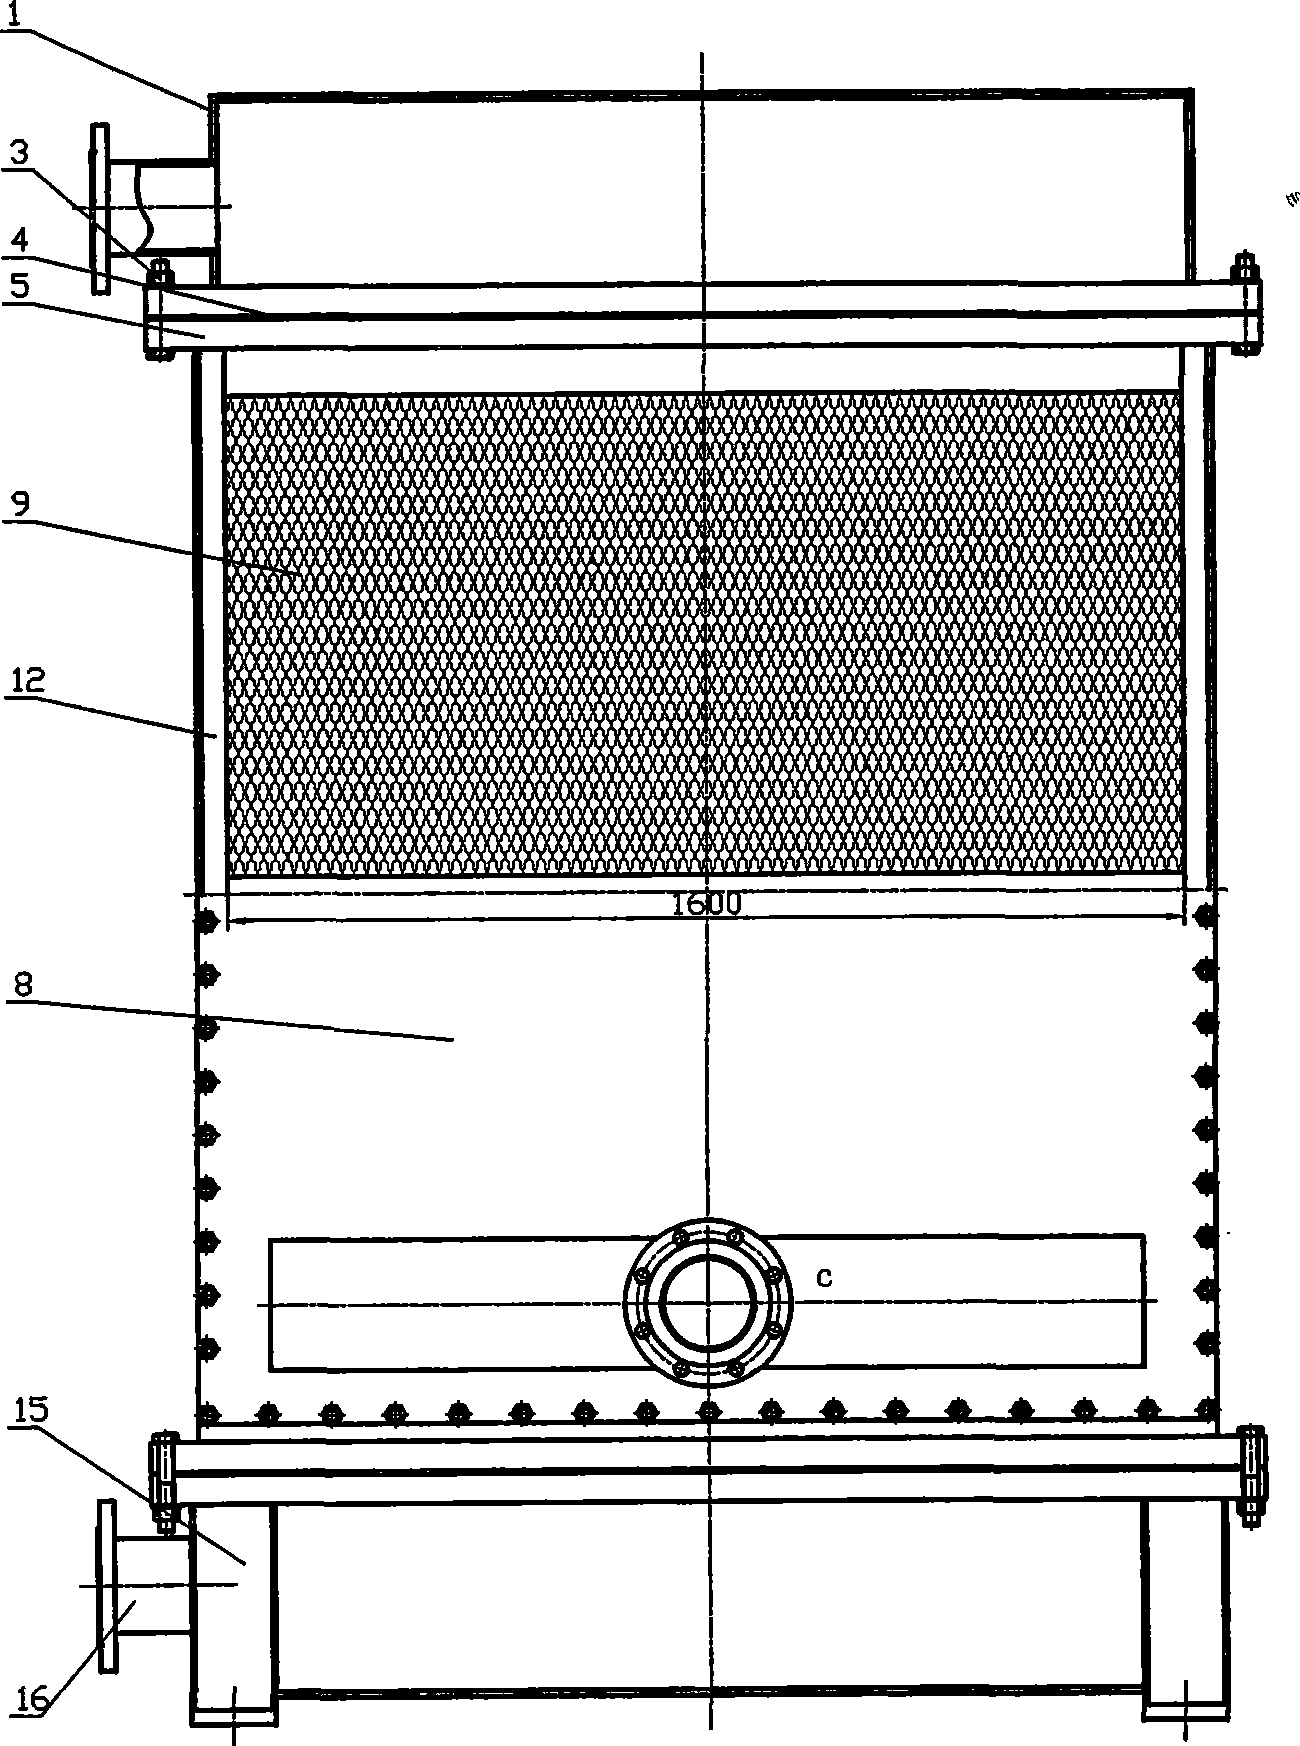 Welded plate type heat exchanger